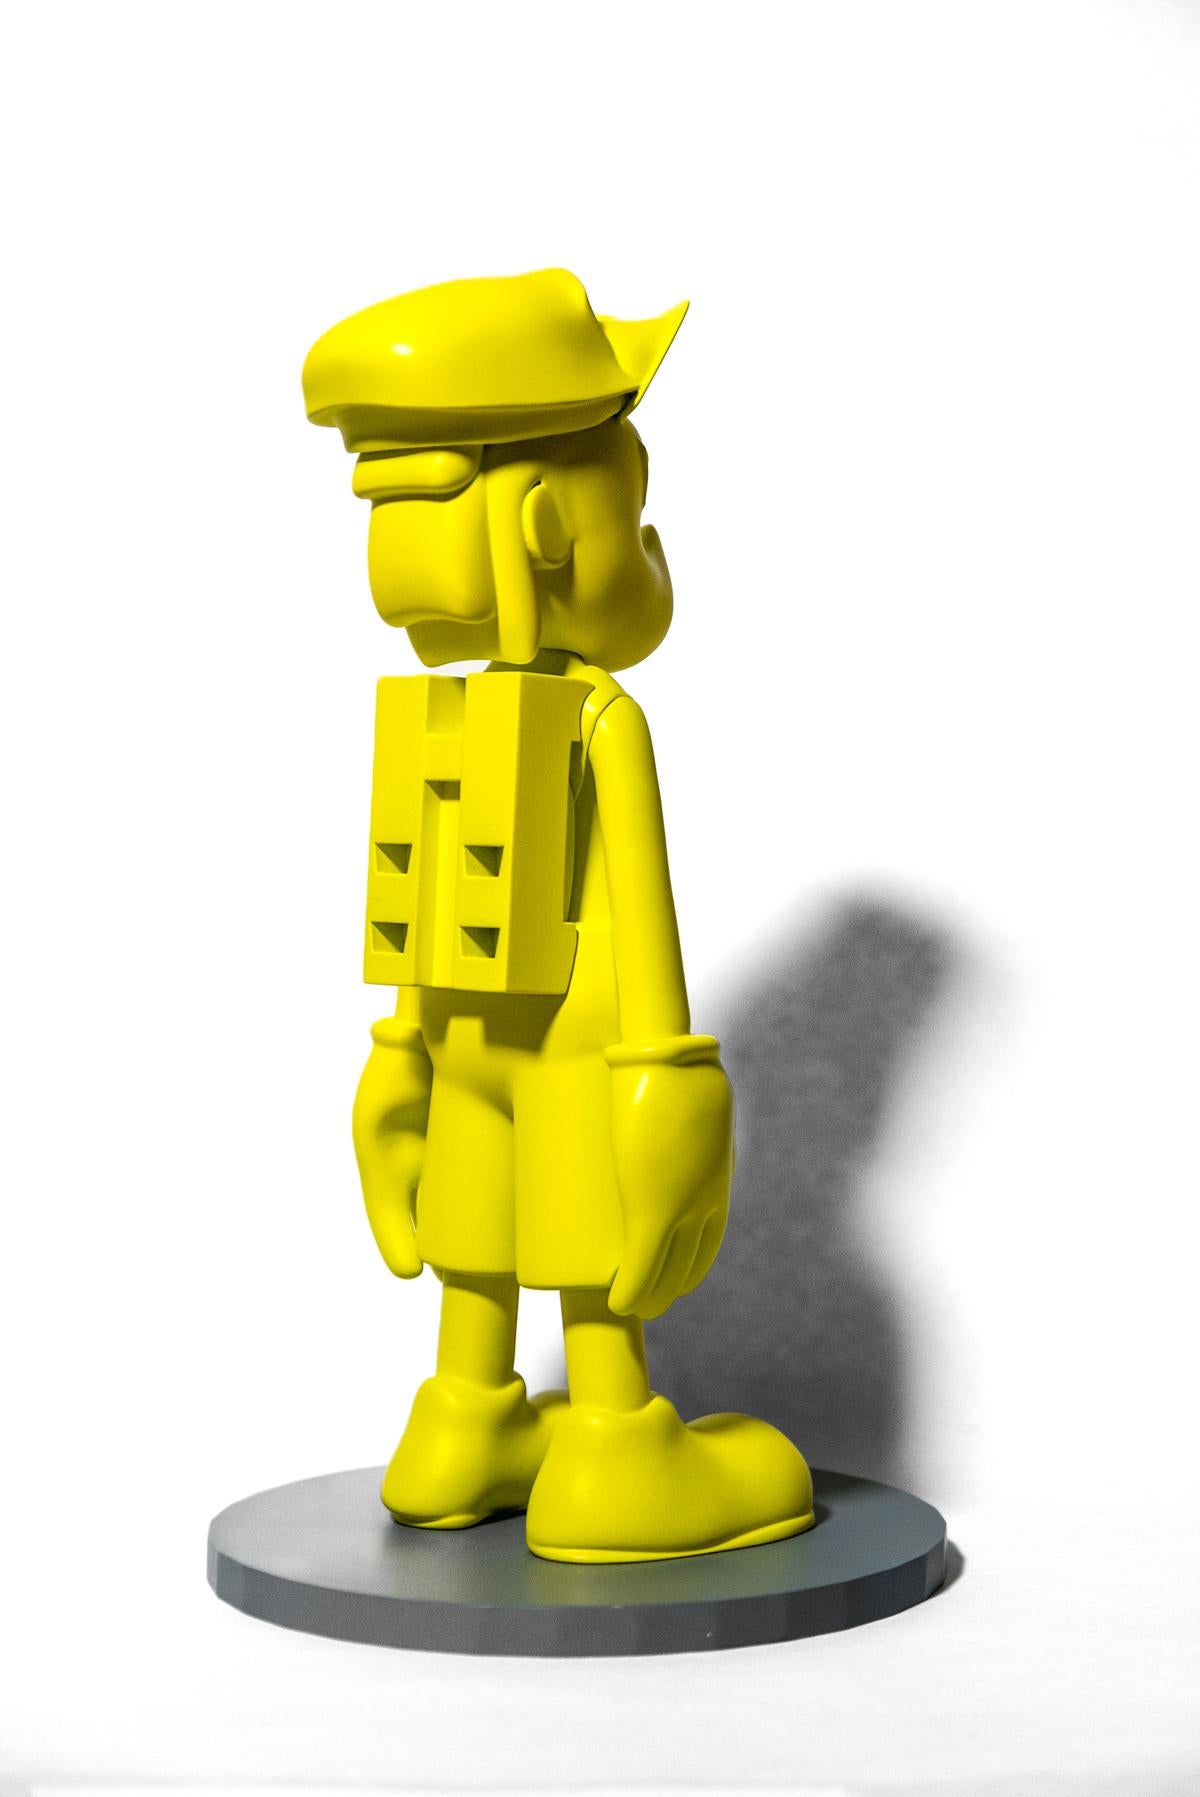 XOX Chill Yellow 1/10 - graphisme, pop-art, sculpture figurative en résine - Jaune Figurative Sculpture par Viktor Mitic